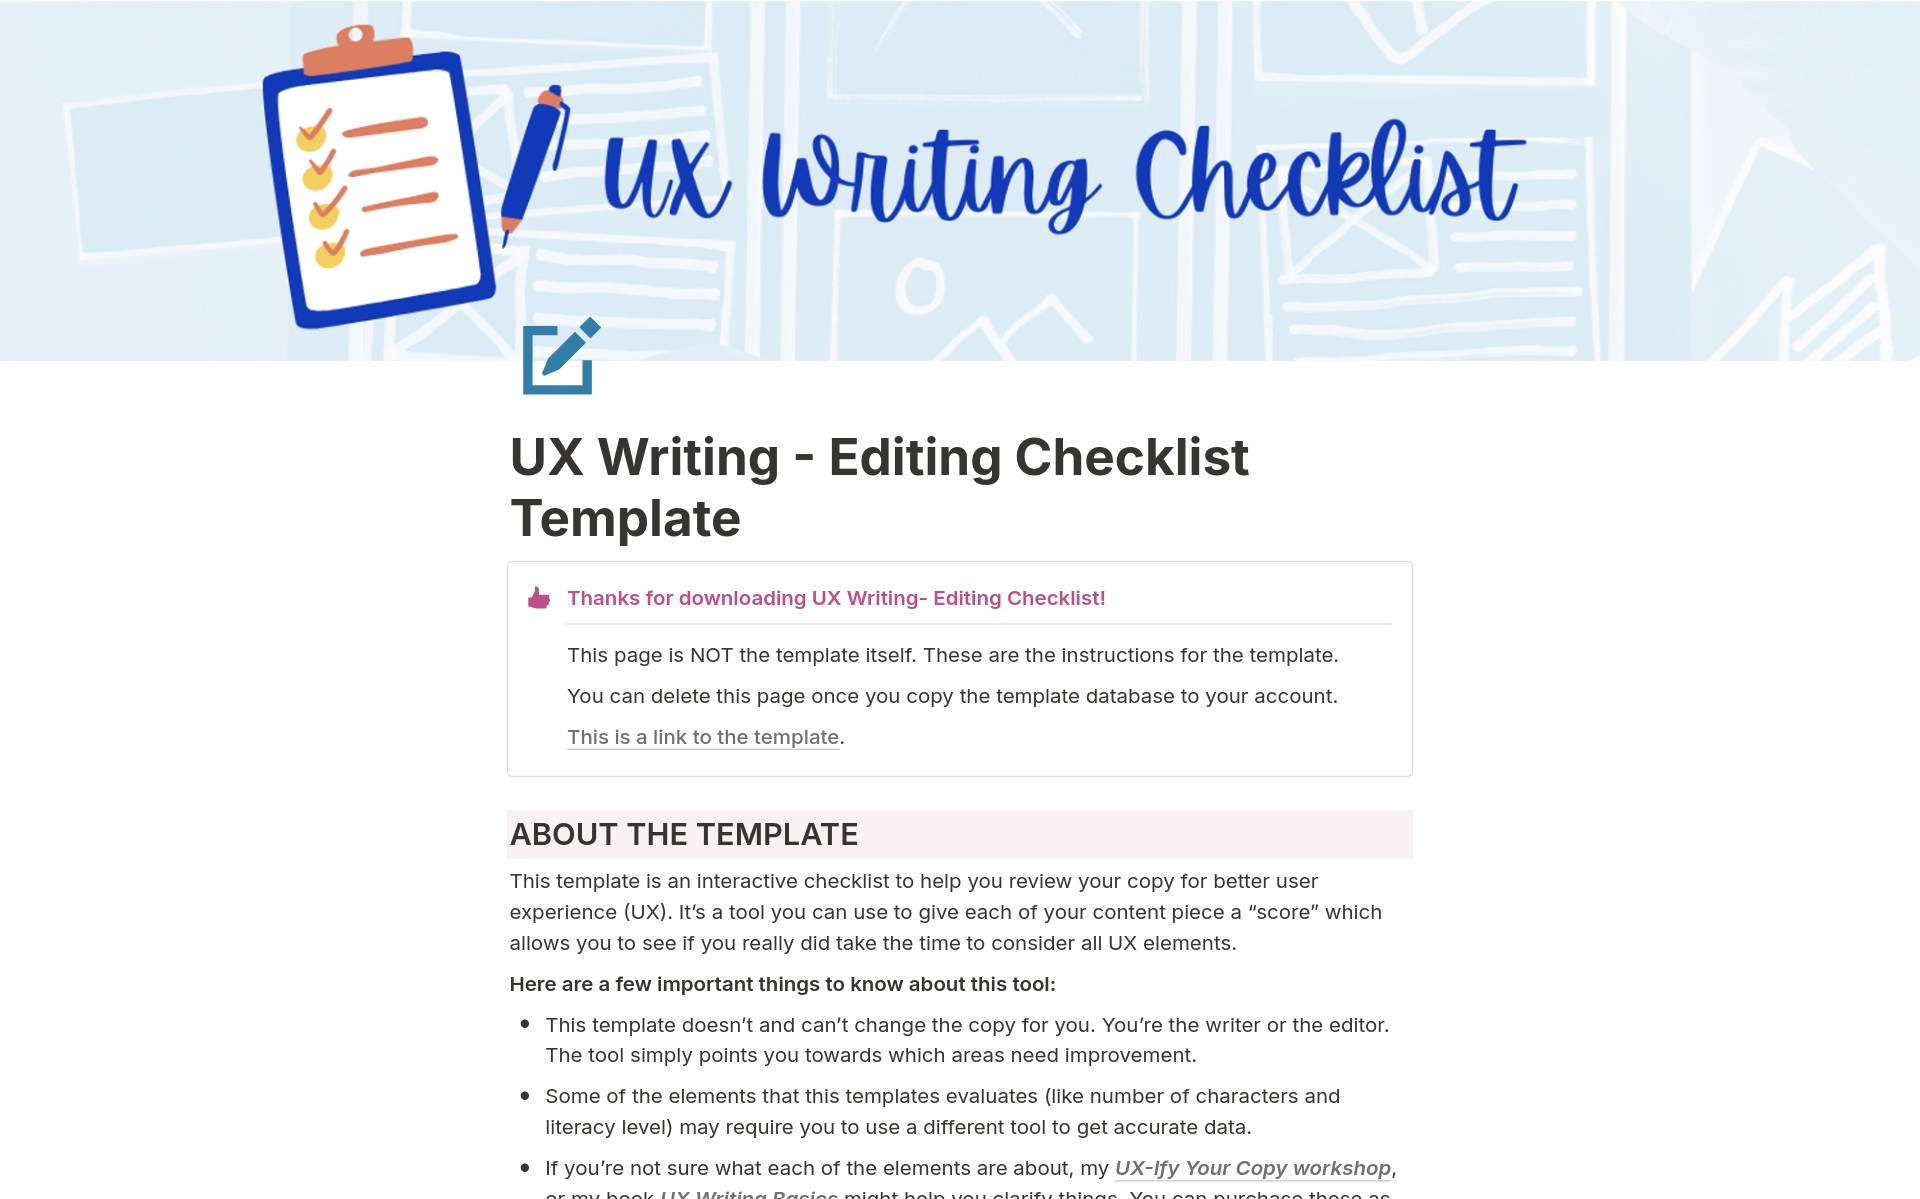 Uma prévia do modelo para UX Writing - Editing Checklist